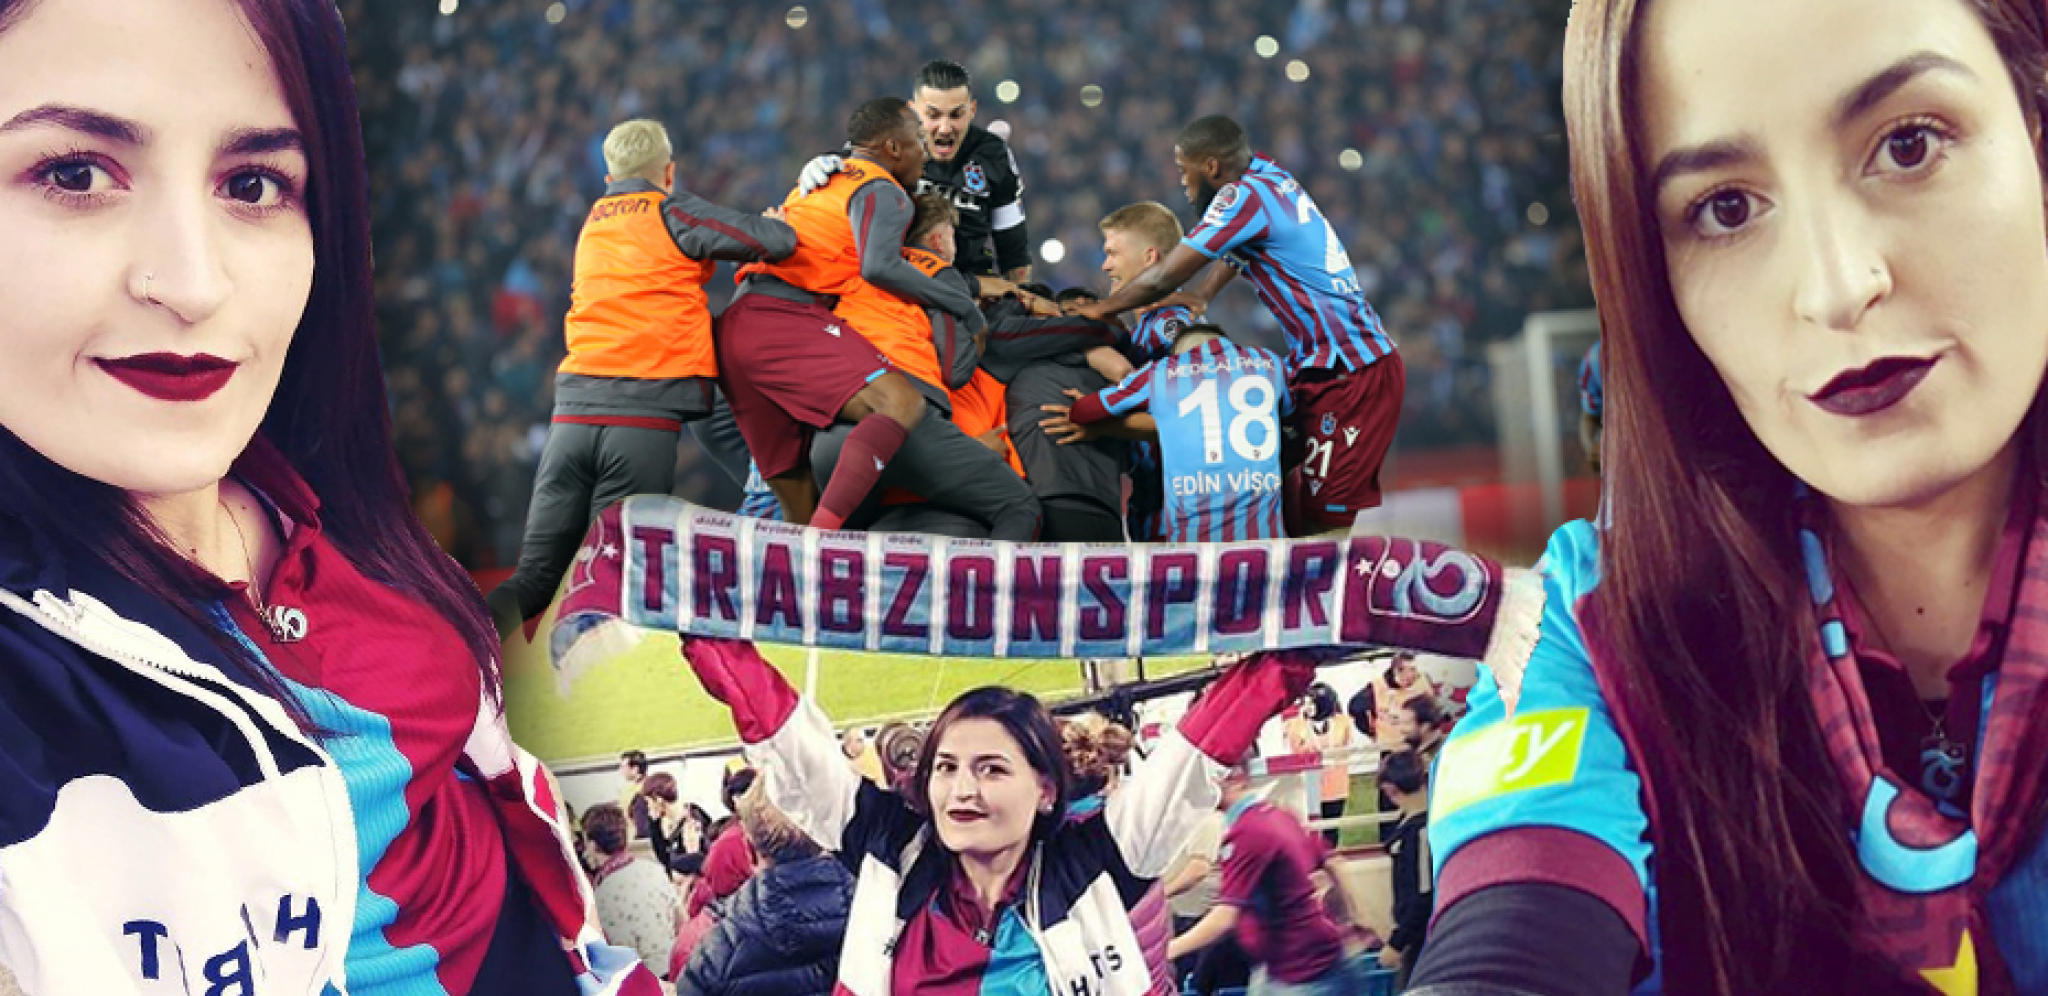 ZVEZDU ČEKA VRUĆ DOČEK U TURSKOJ Verna navijačica Trabzona za "Alo!": "Delije" prave sjajnu atmosferu, ali pobedićemo crveno-bele (FOTO)